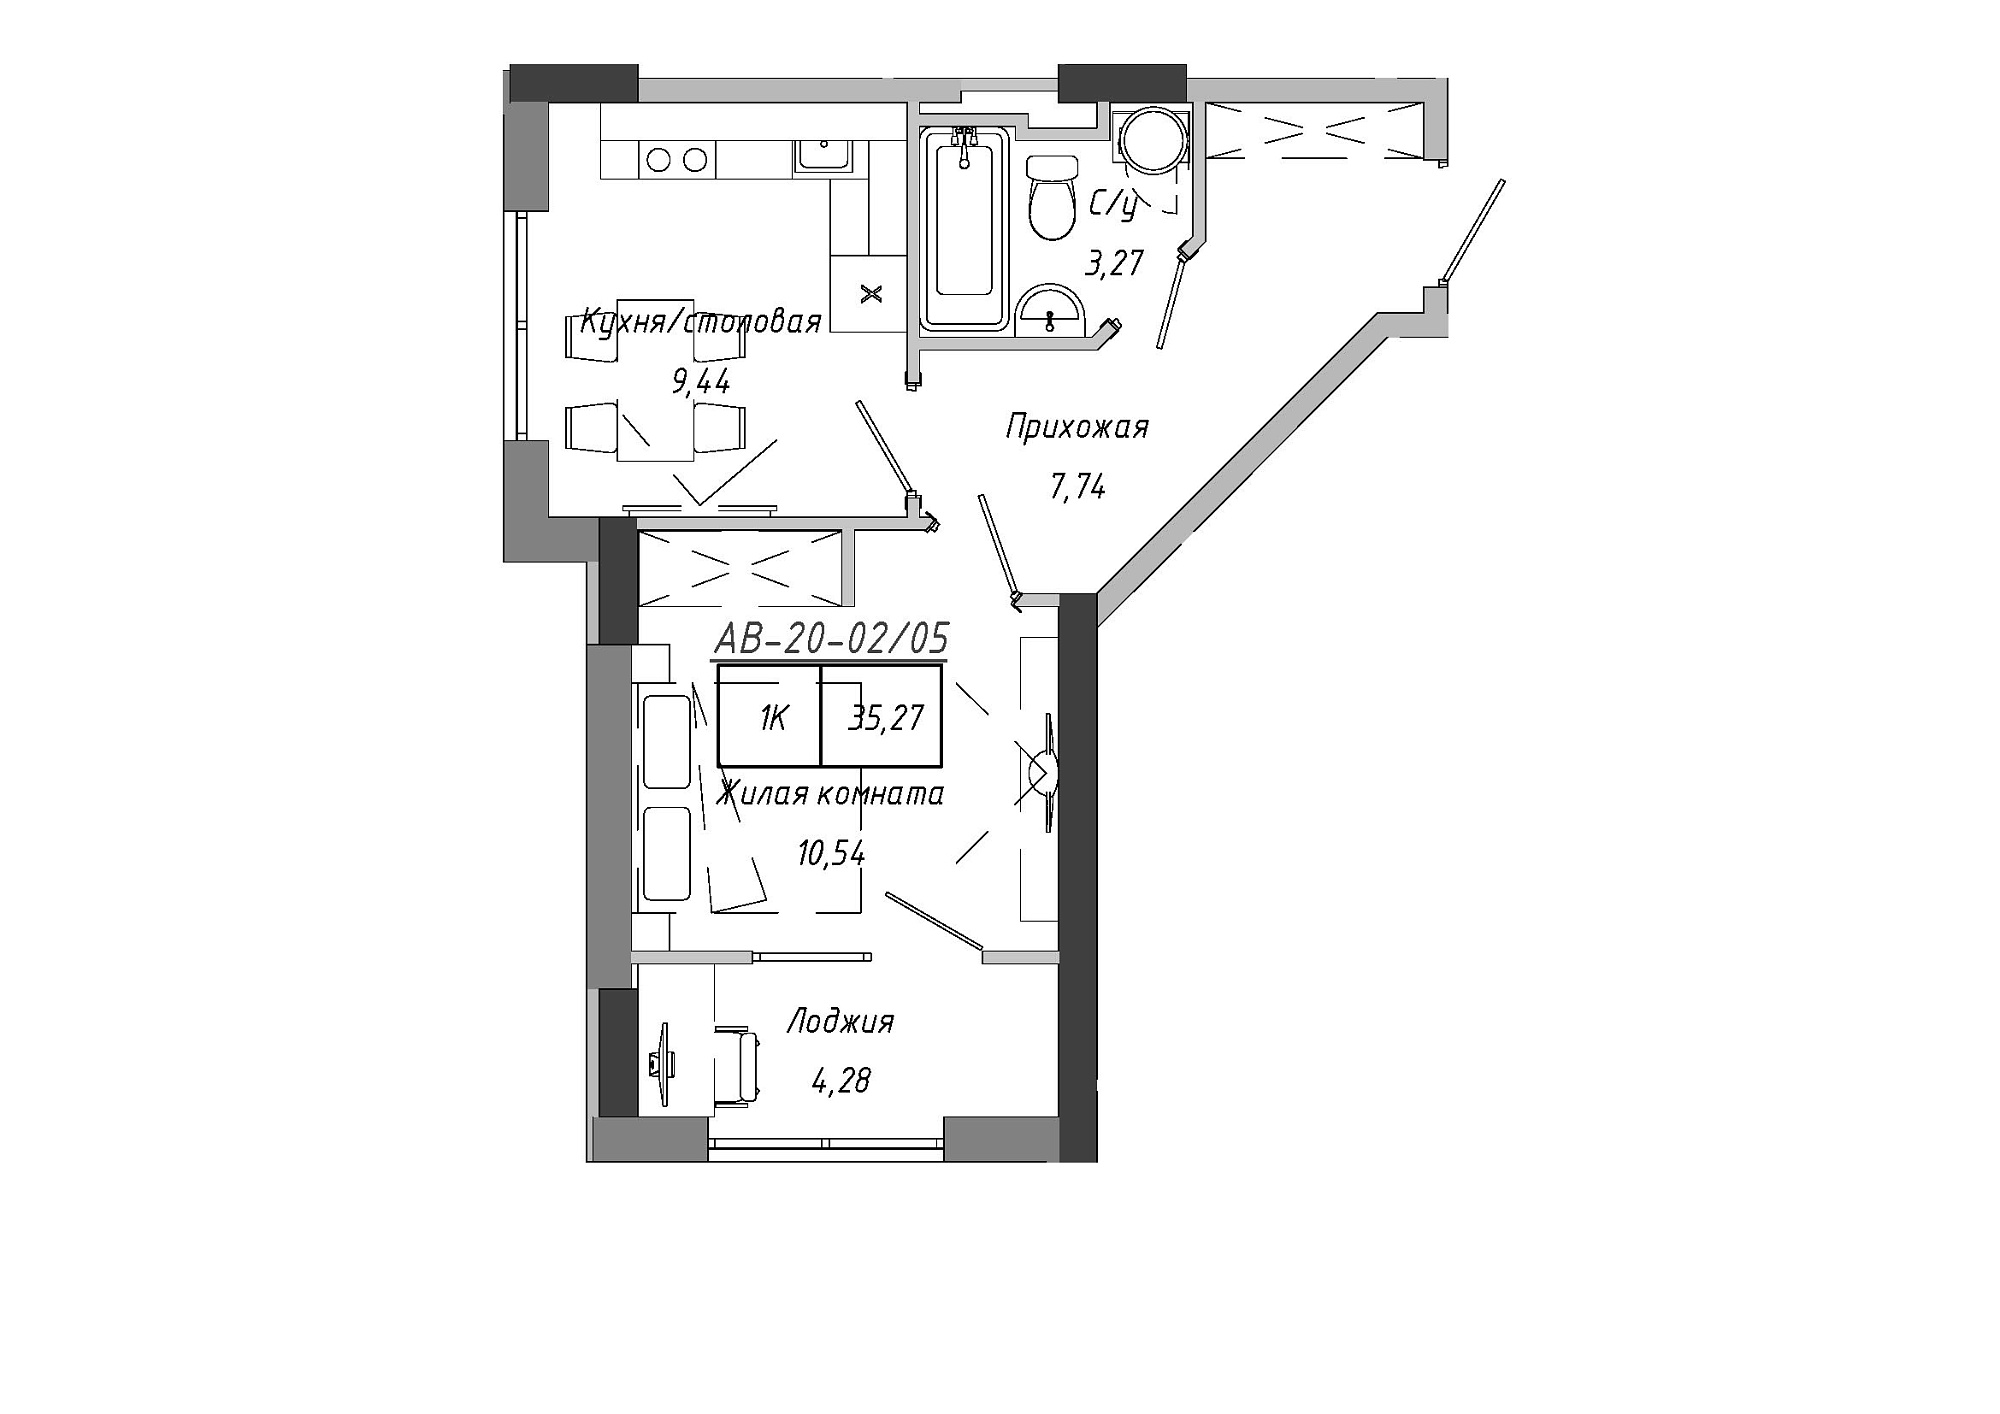 Планировка 1-к квартира площей 35.27м2, AB-20-02/00005.